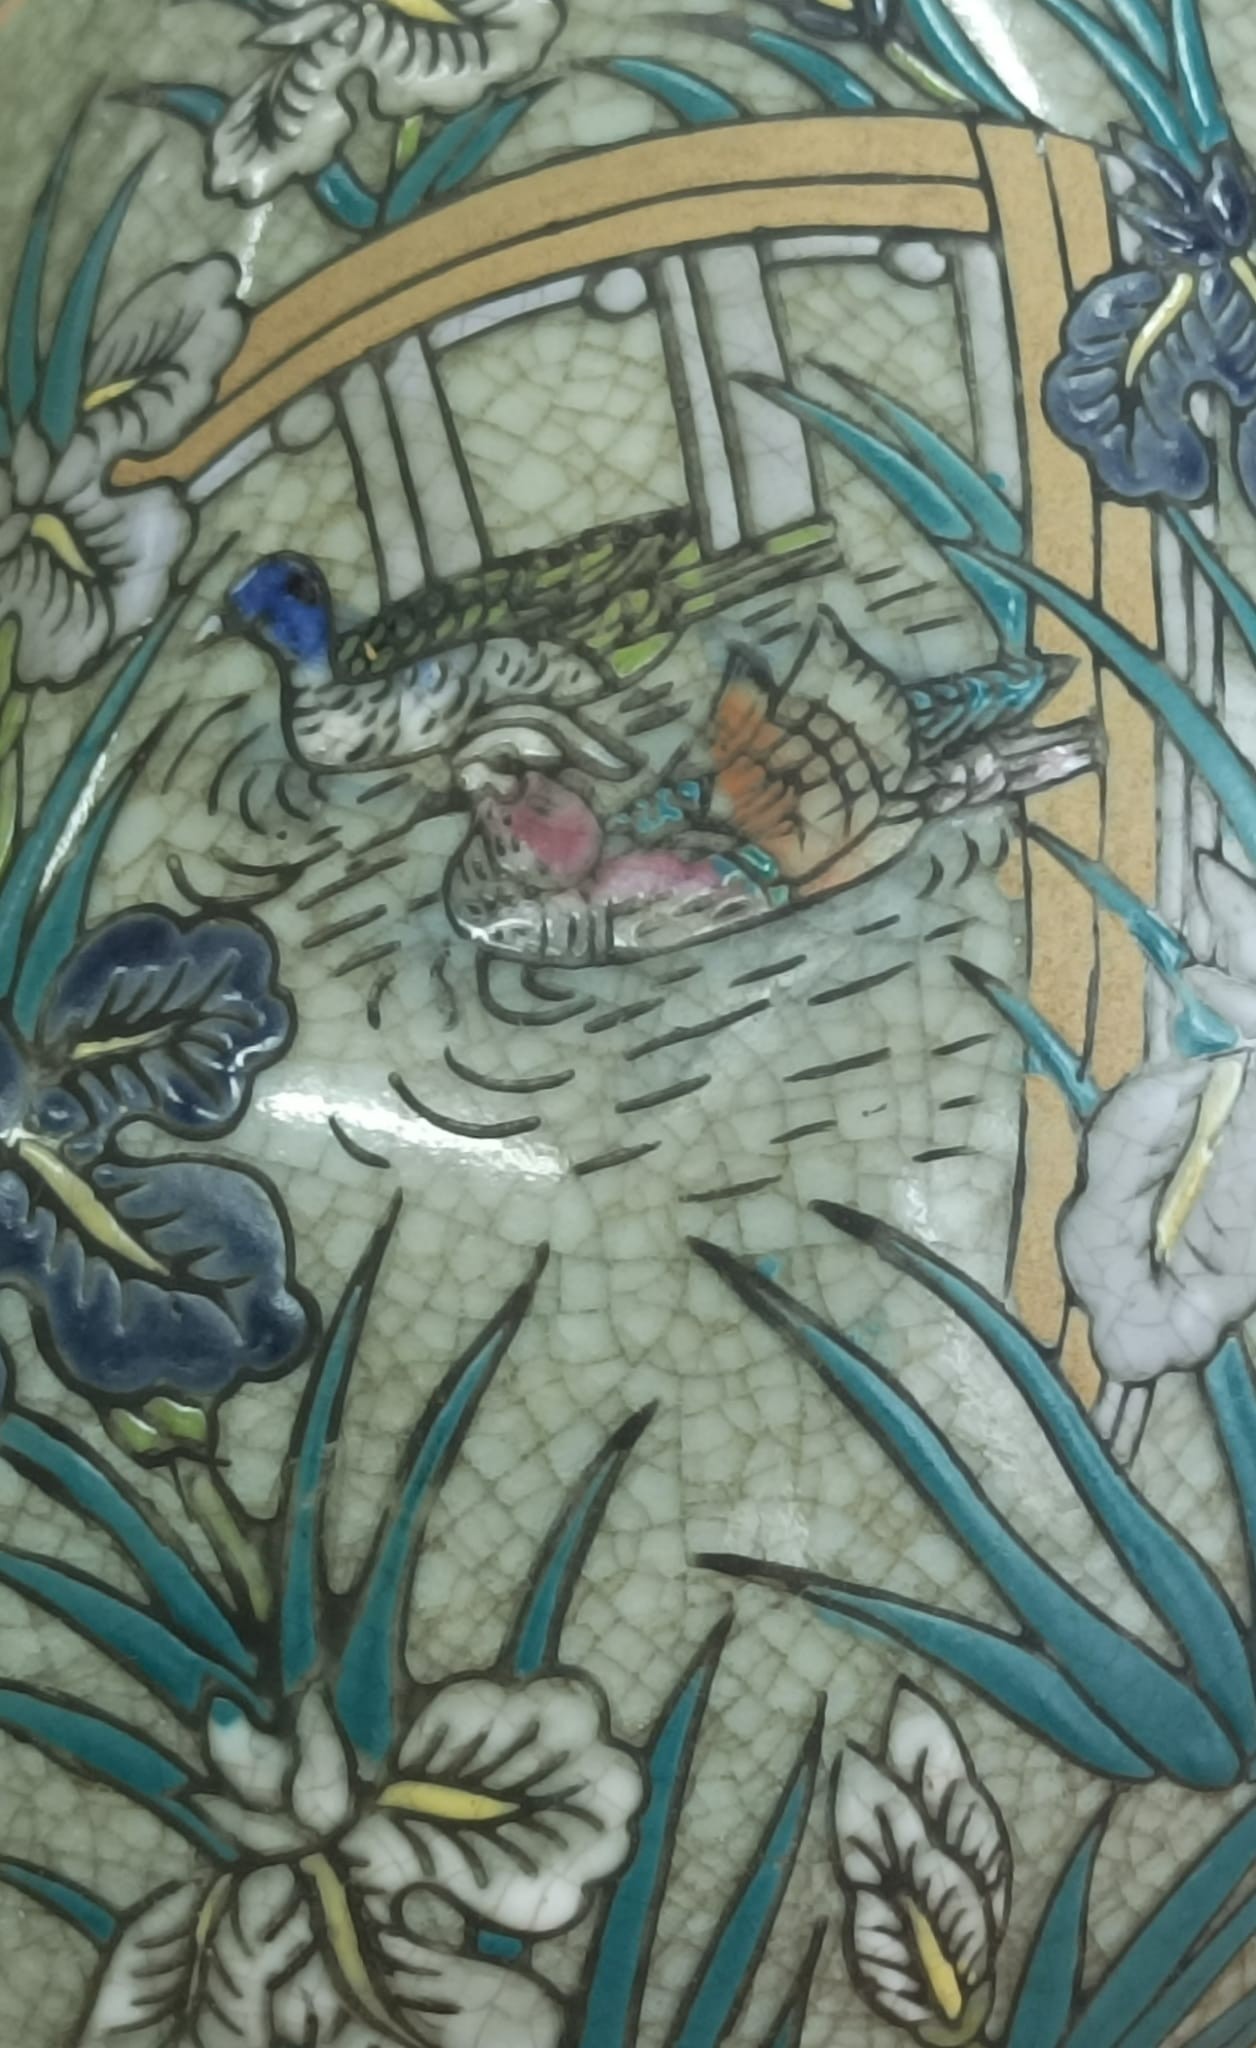 Gato em porcelana celadon, decoração com vegetação e pássaros